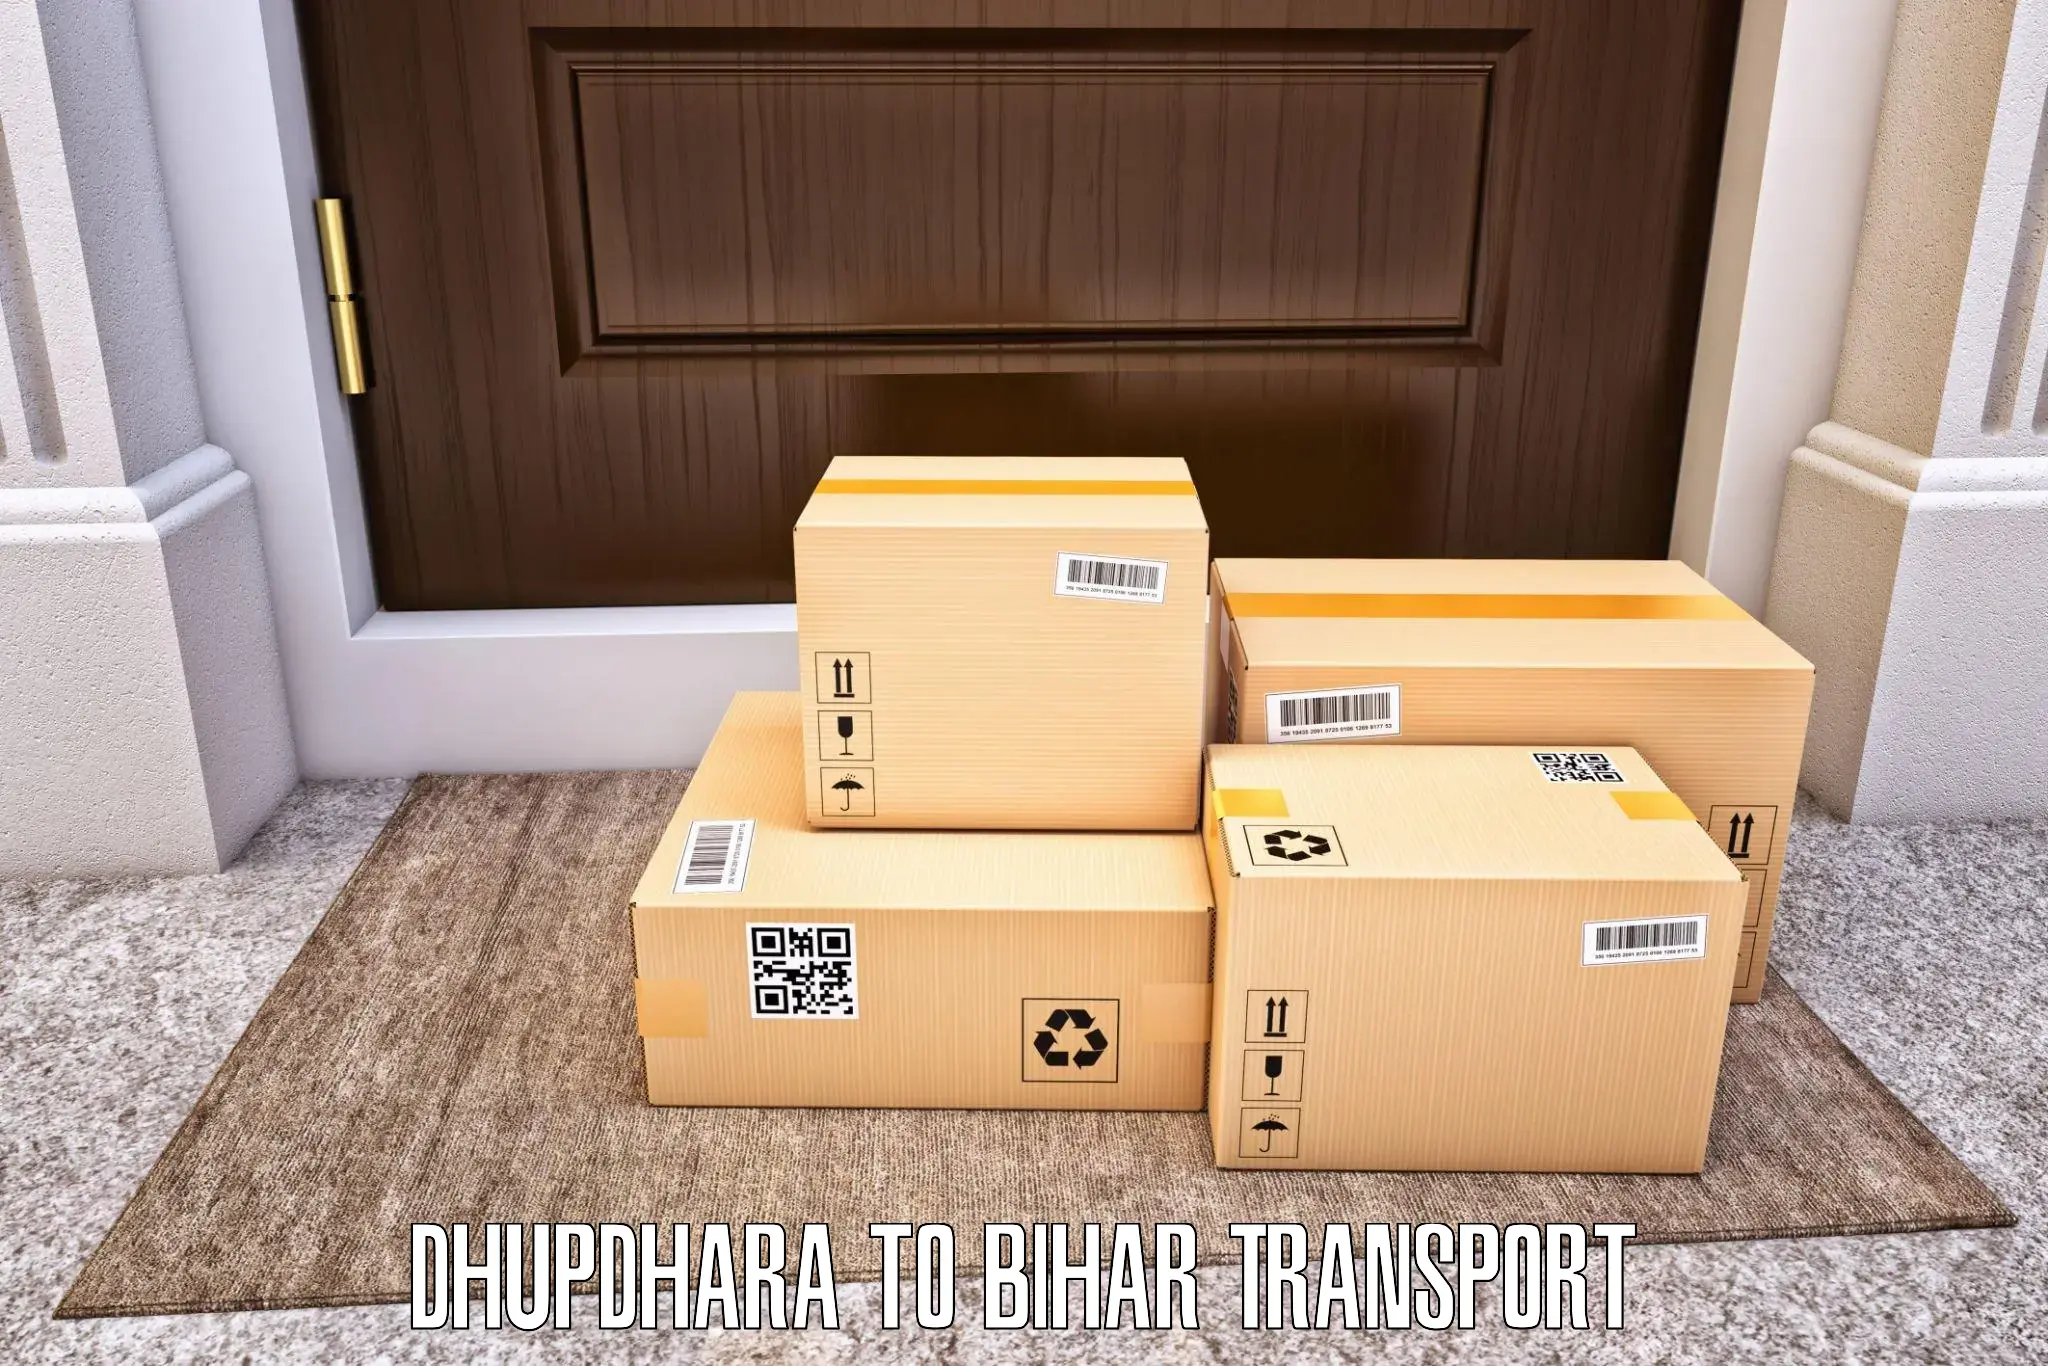 Furniture transport service Dhupdhara to Saran